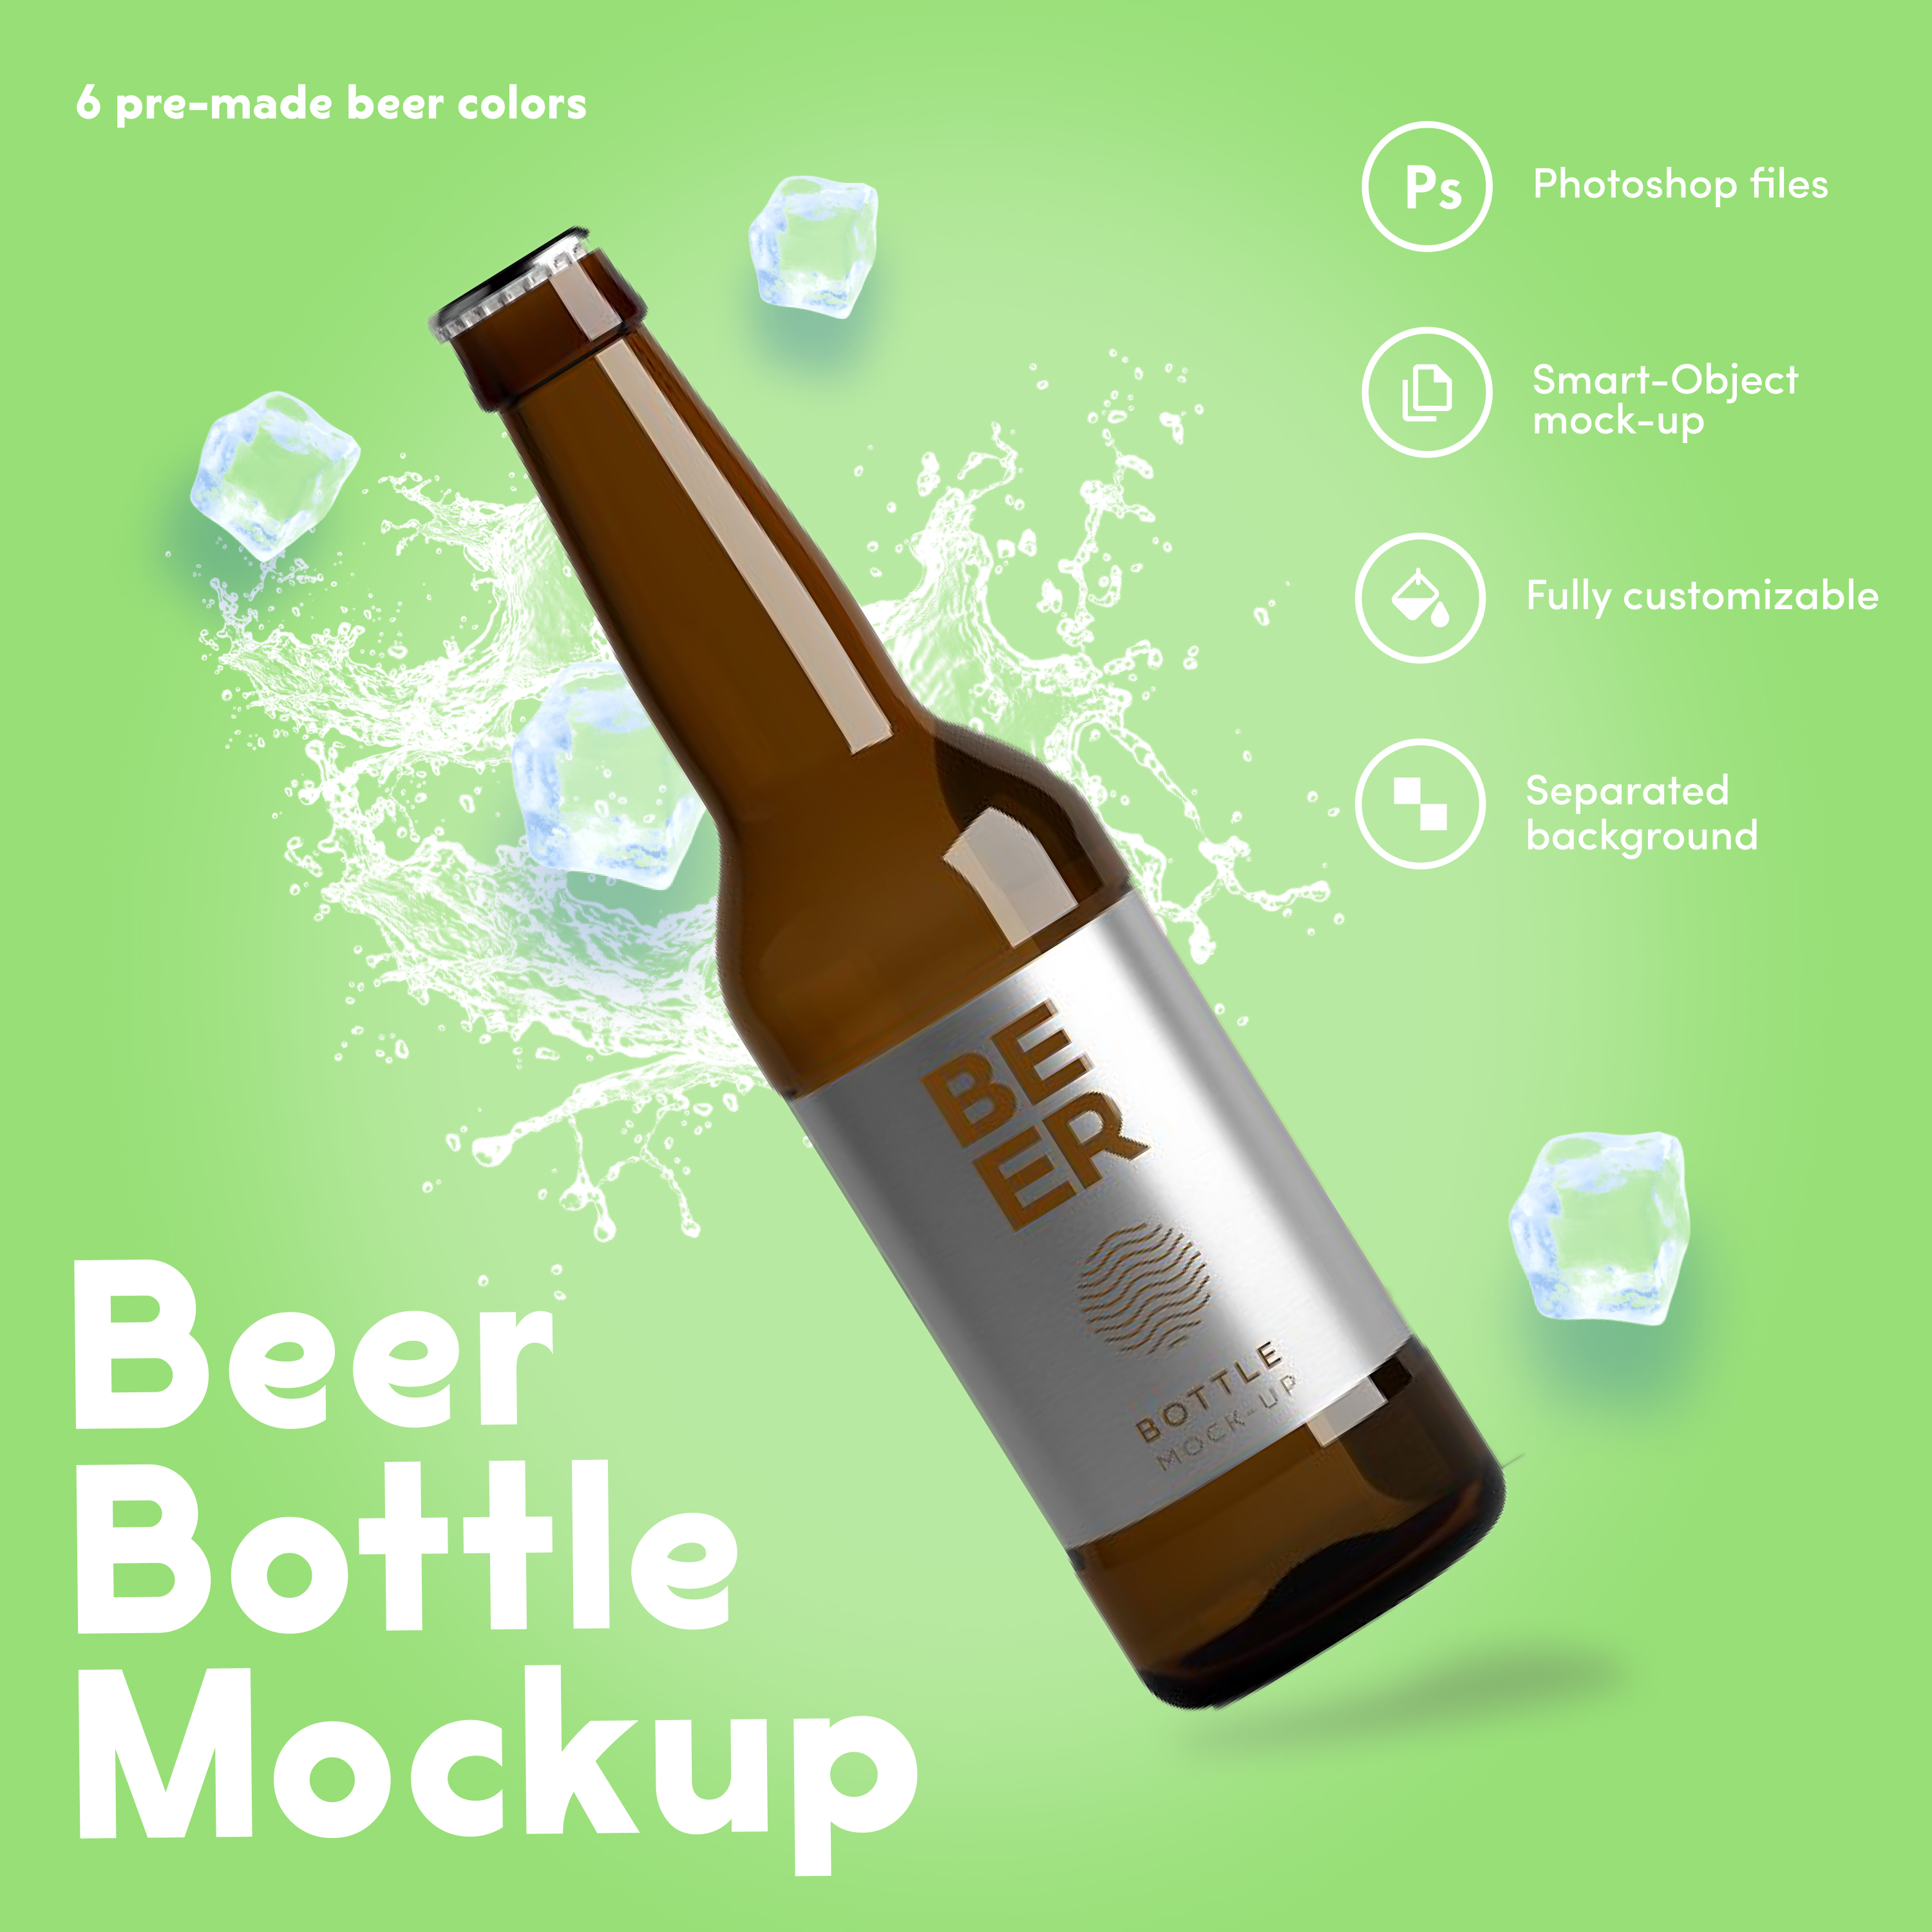 Beer bottle mockup preview.